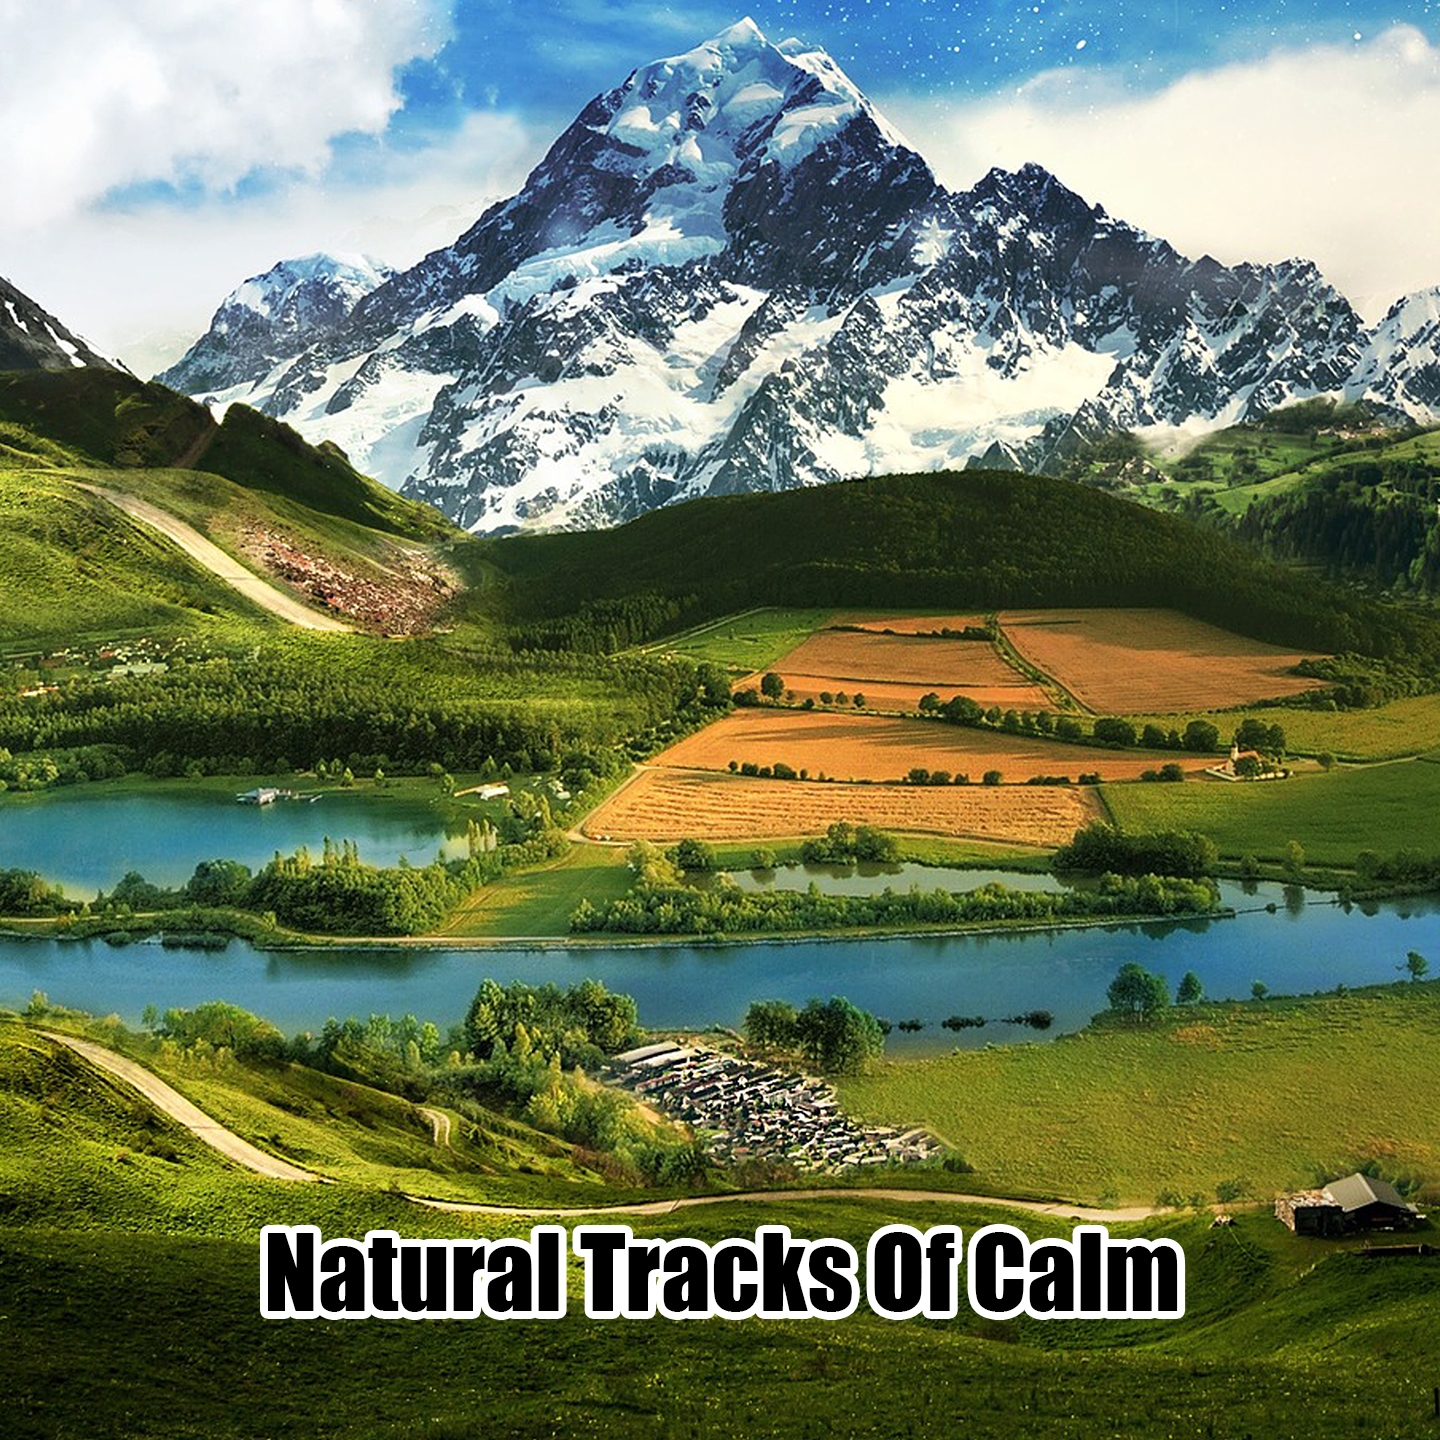 Natural Tracks Of Calm